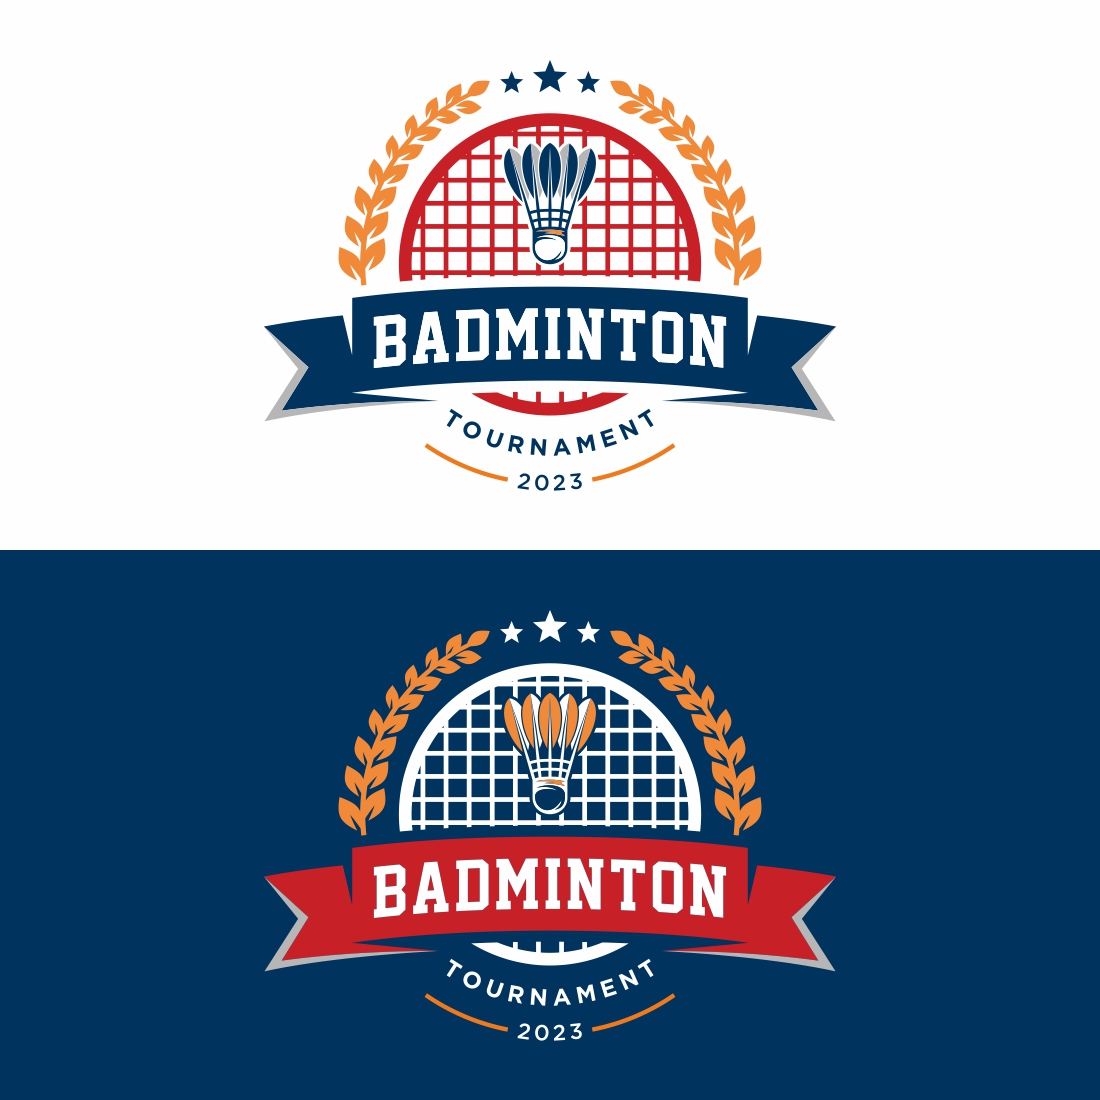 Badminton Logo Design Vector – Only $7 preview image.